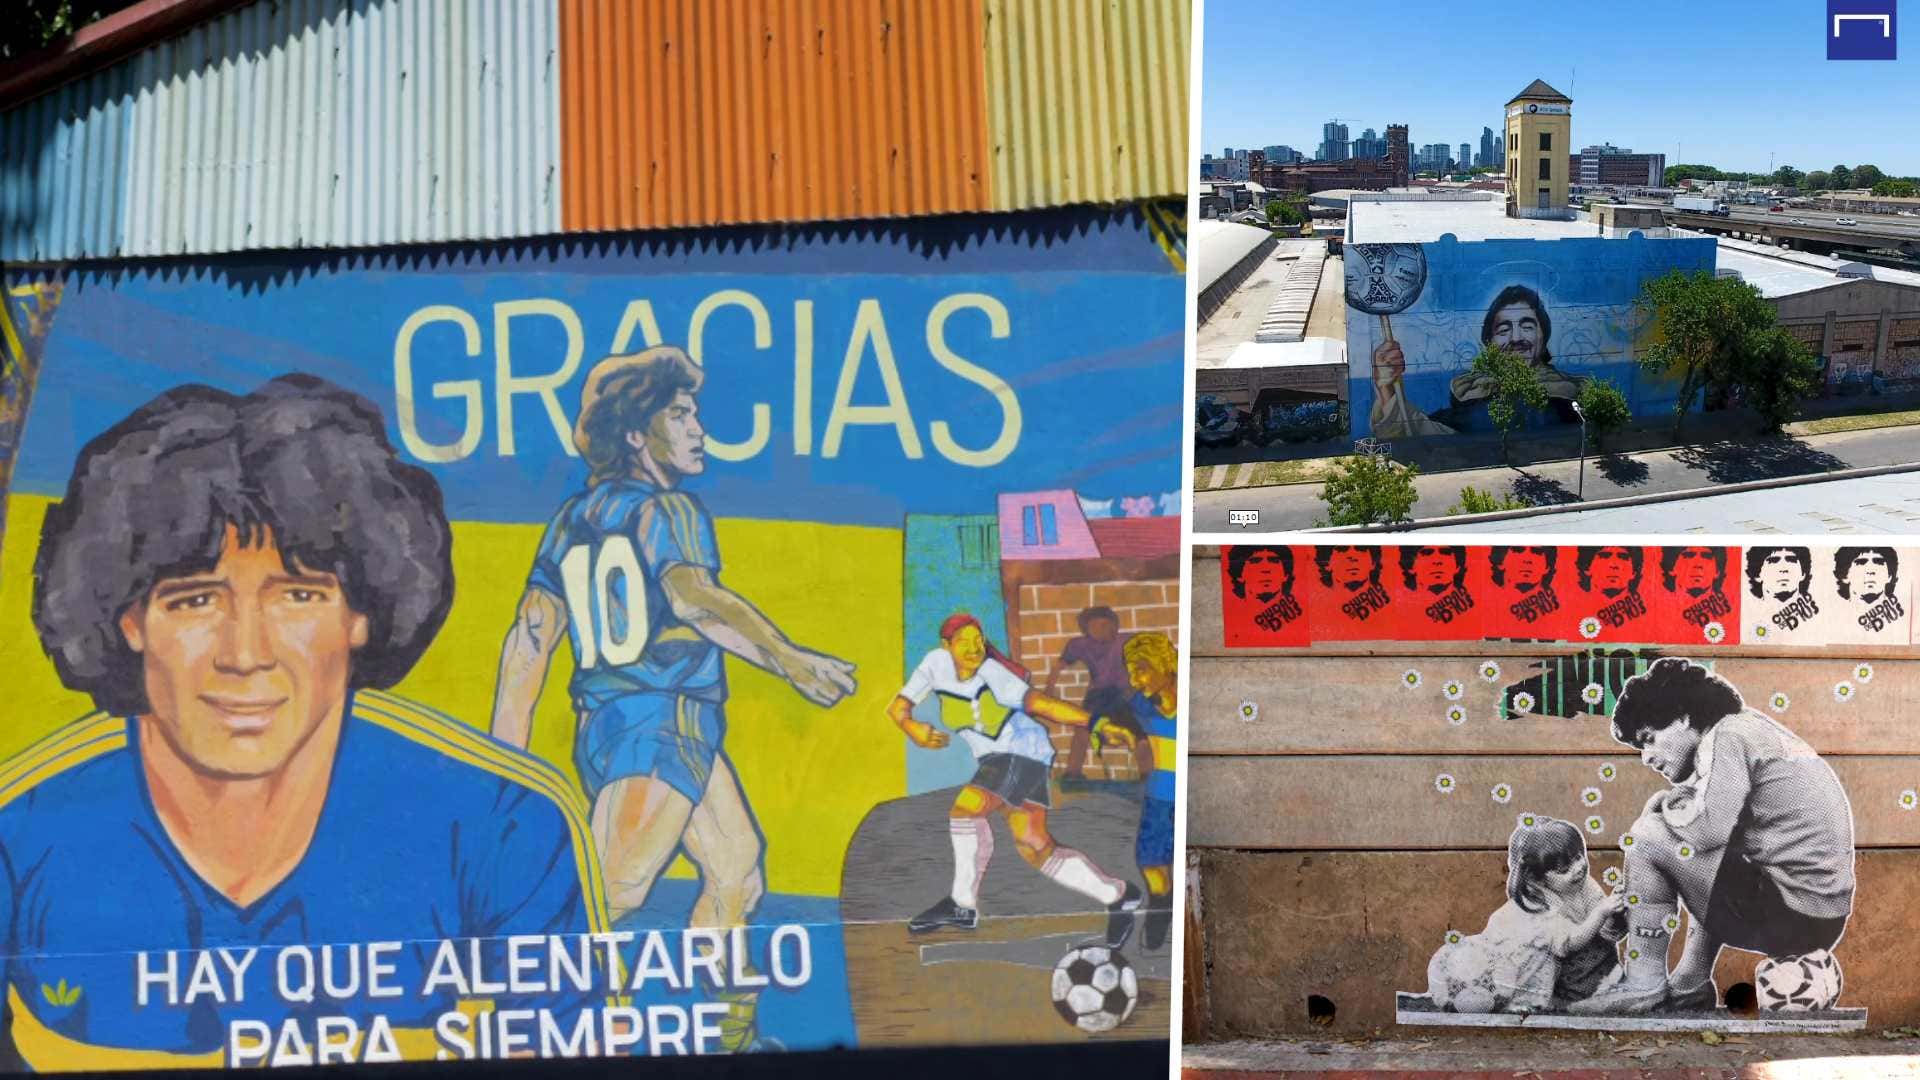 Maradona murales